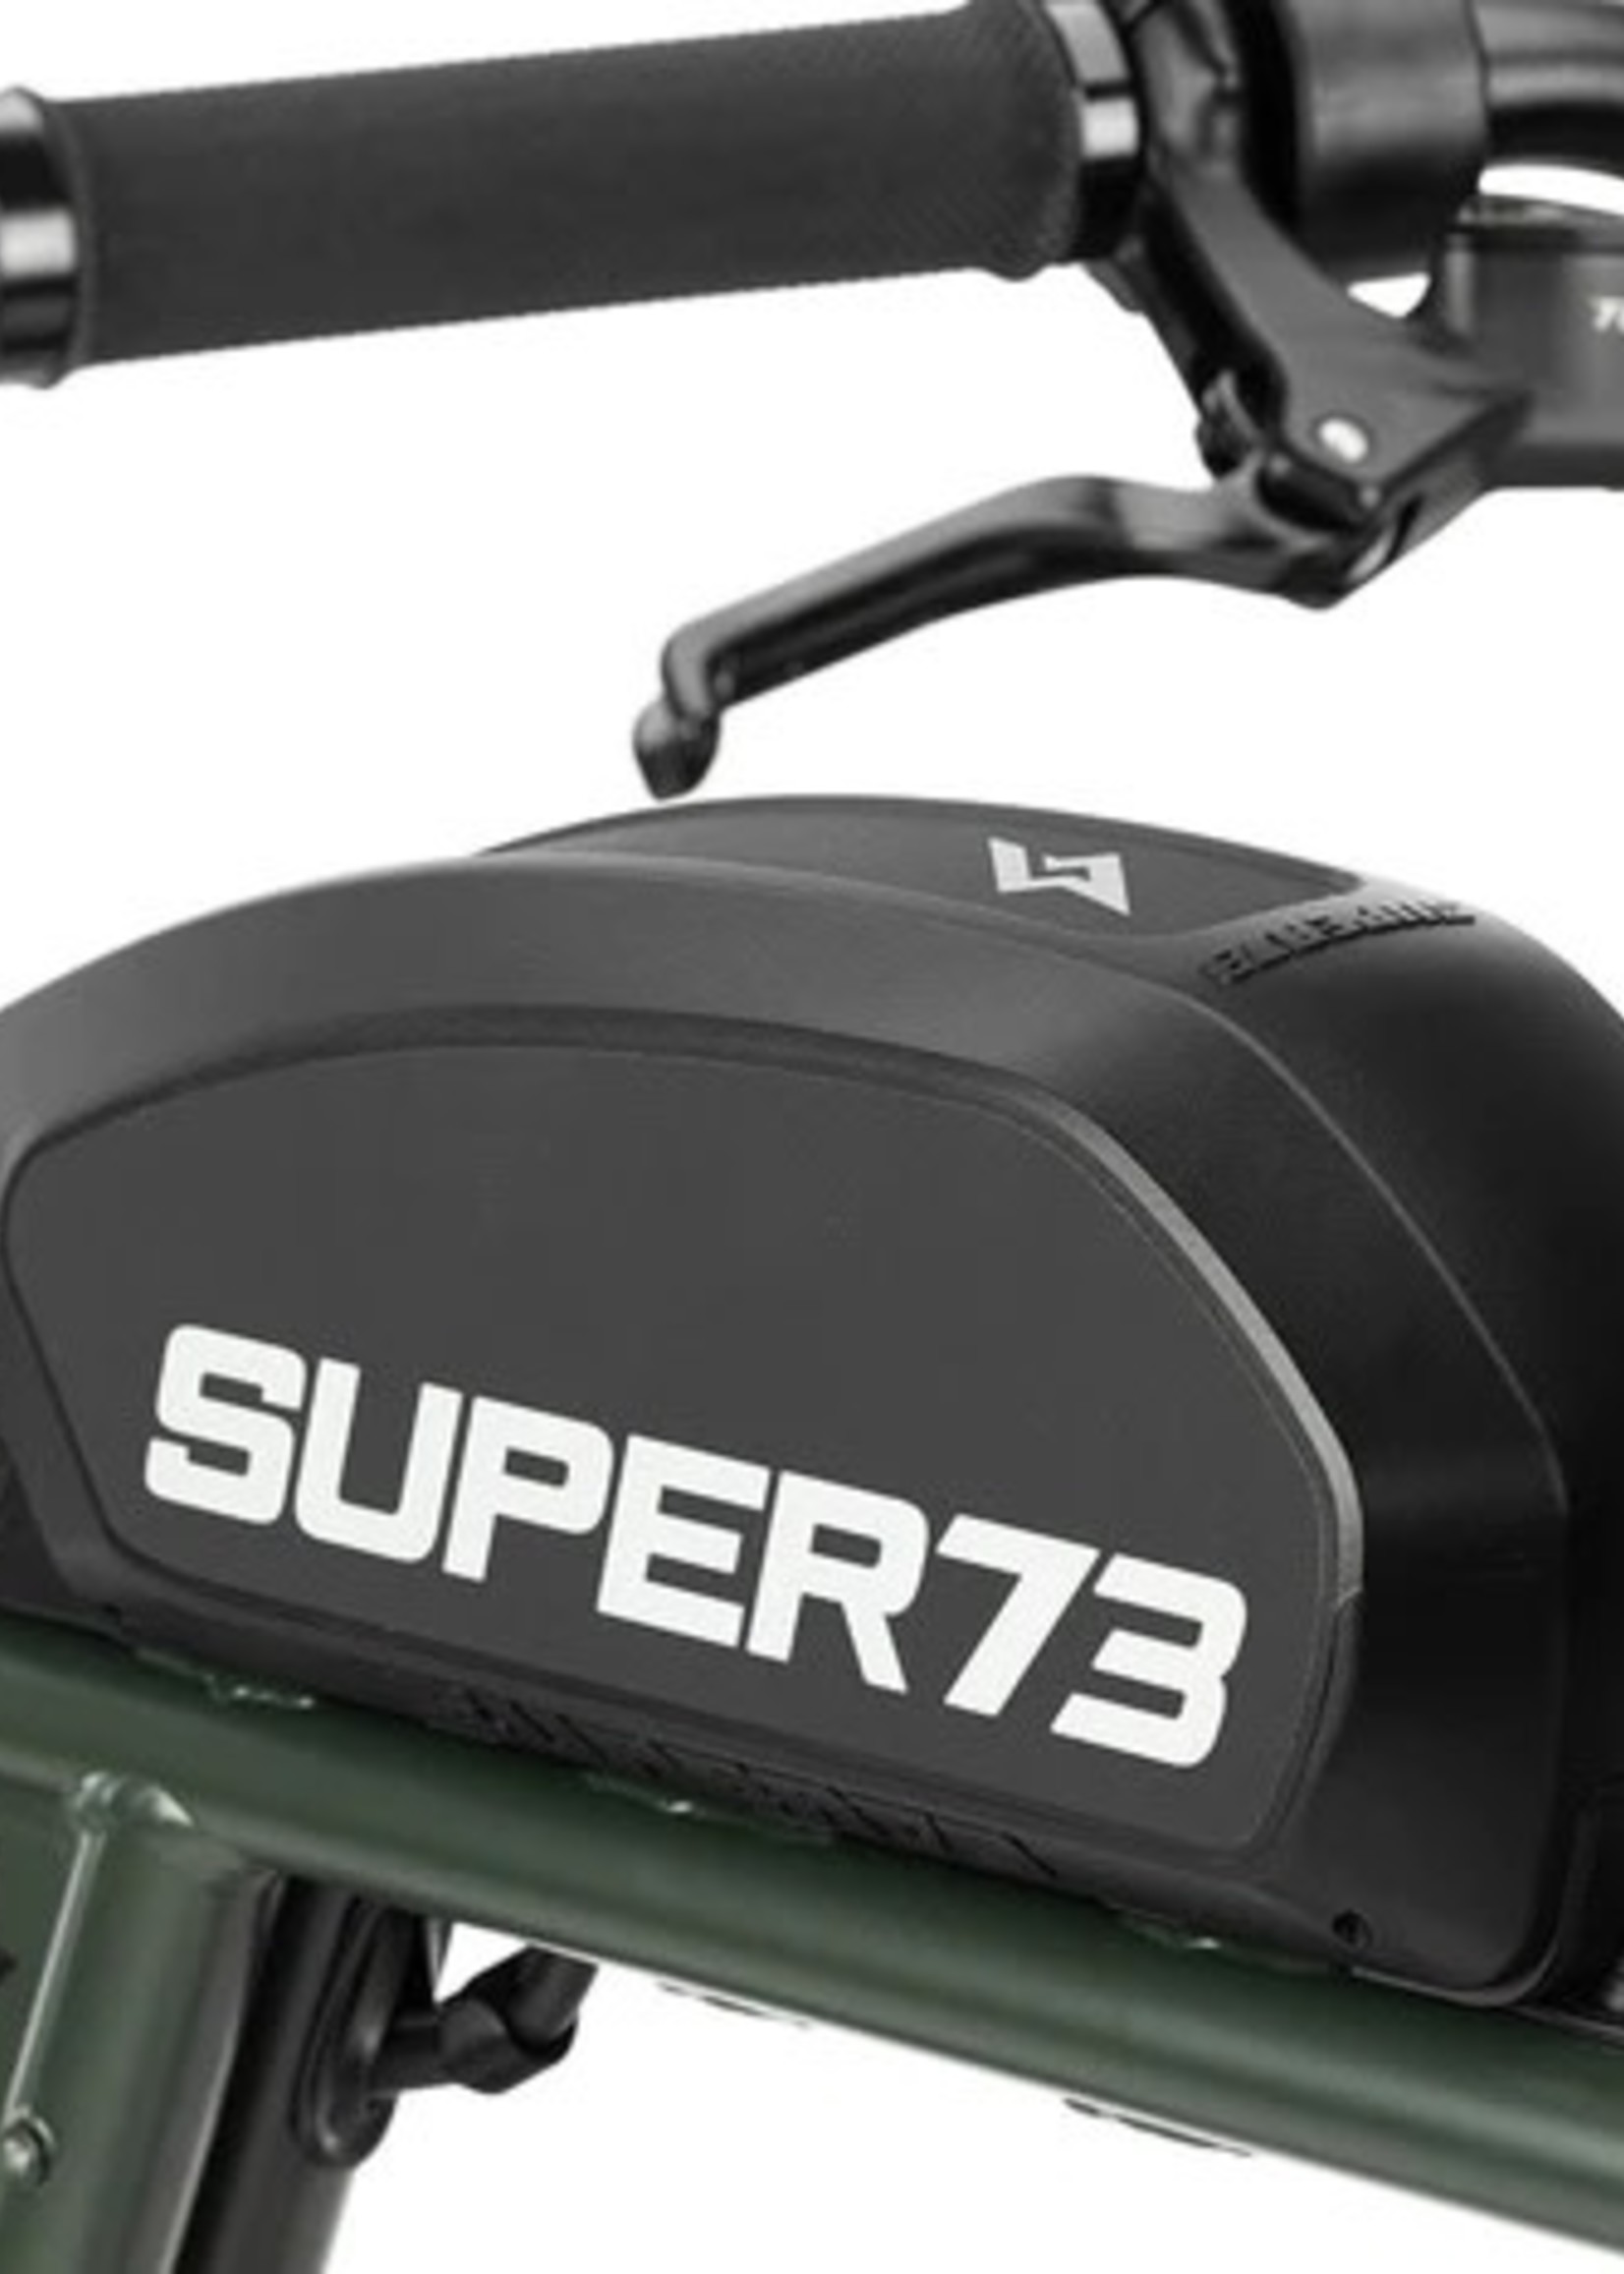 Super73 Super73-R